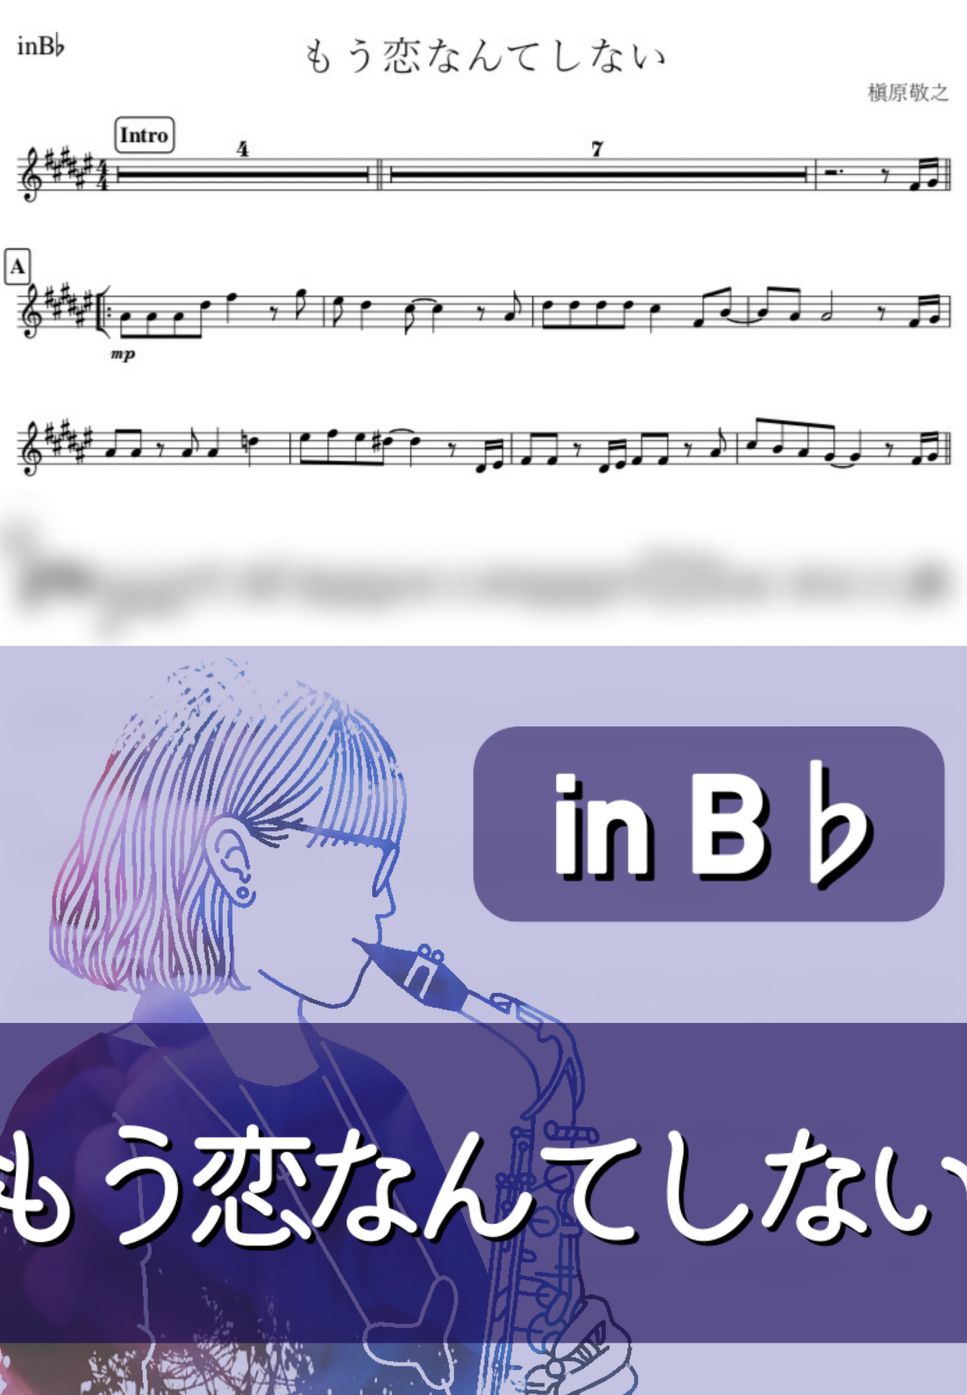 槇原敬之 - もう恋なんてしない (B♭) by kanamusic